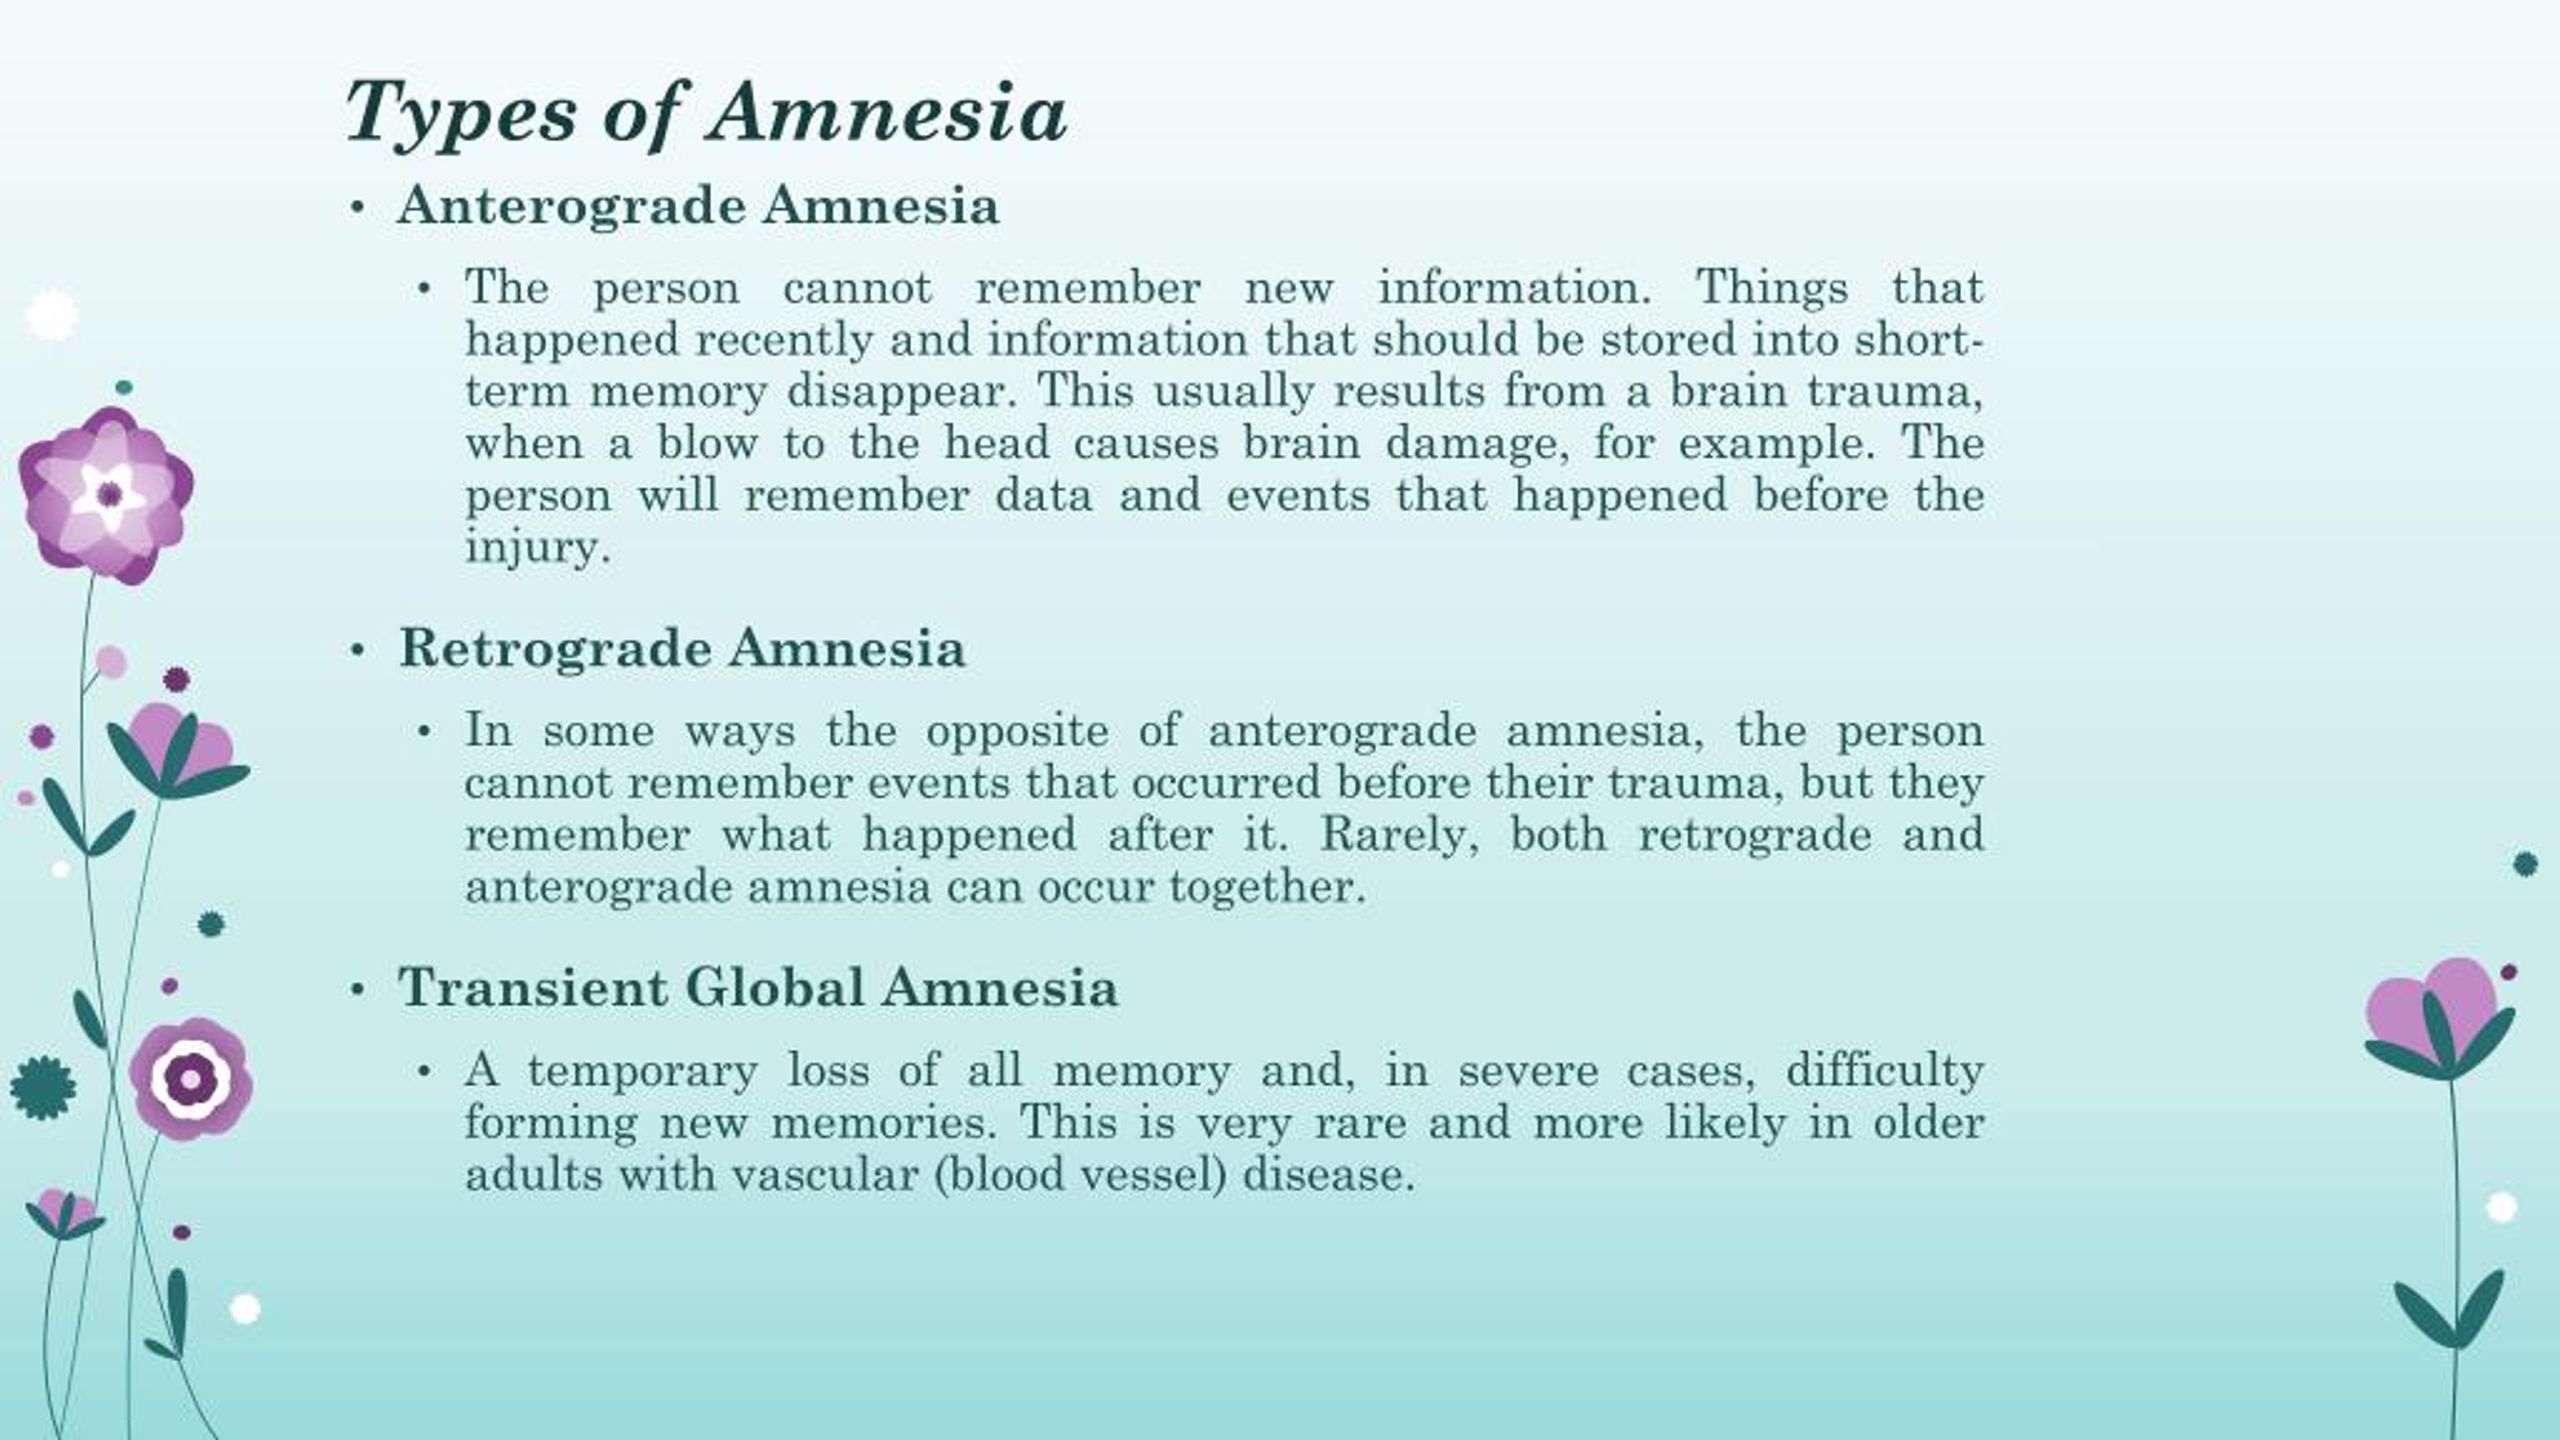 causes of amnesia